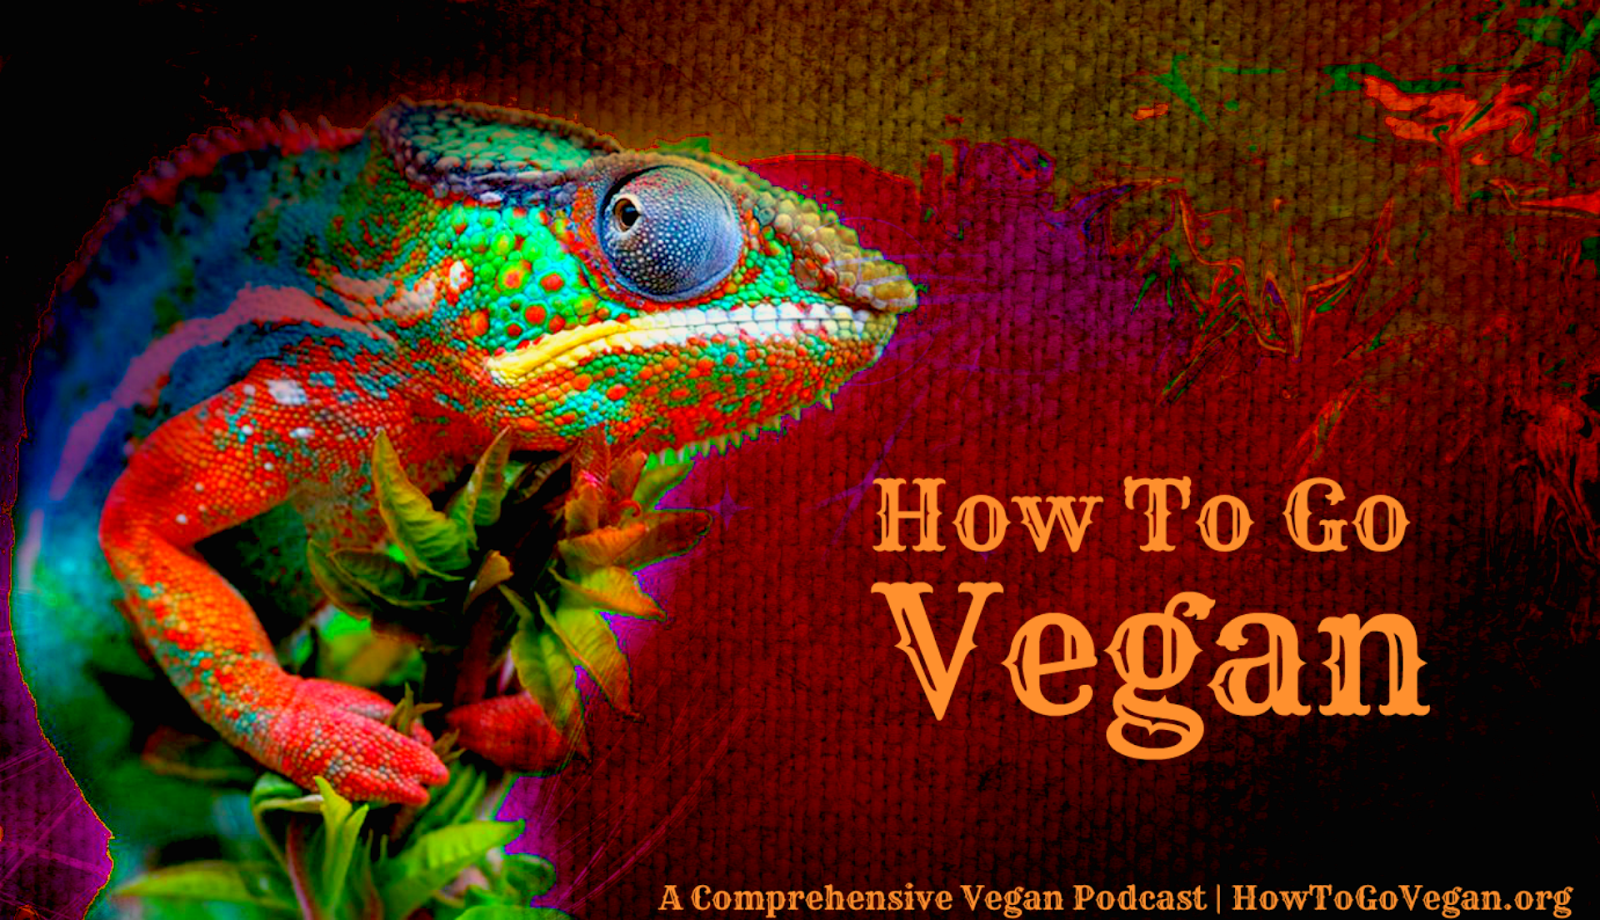 How To Go Vegan: A Comprehensive Vegan Podcast